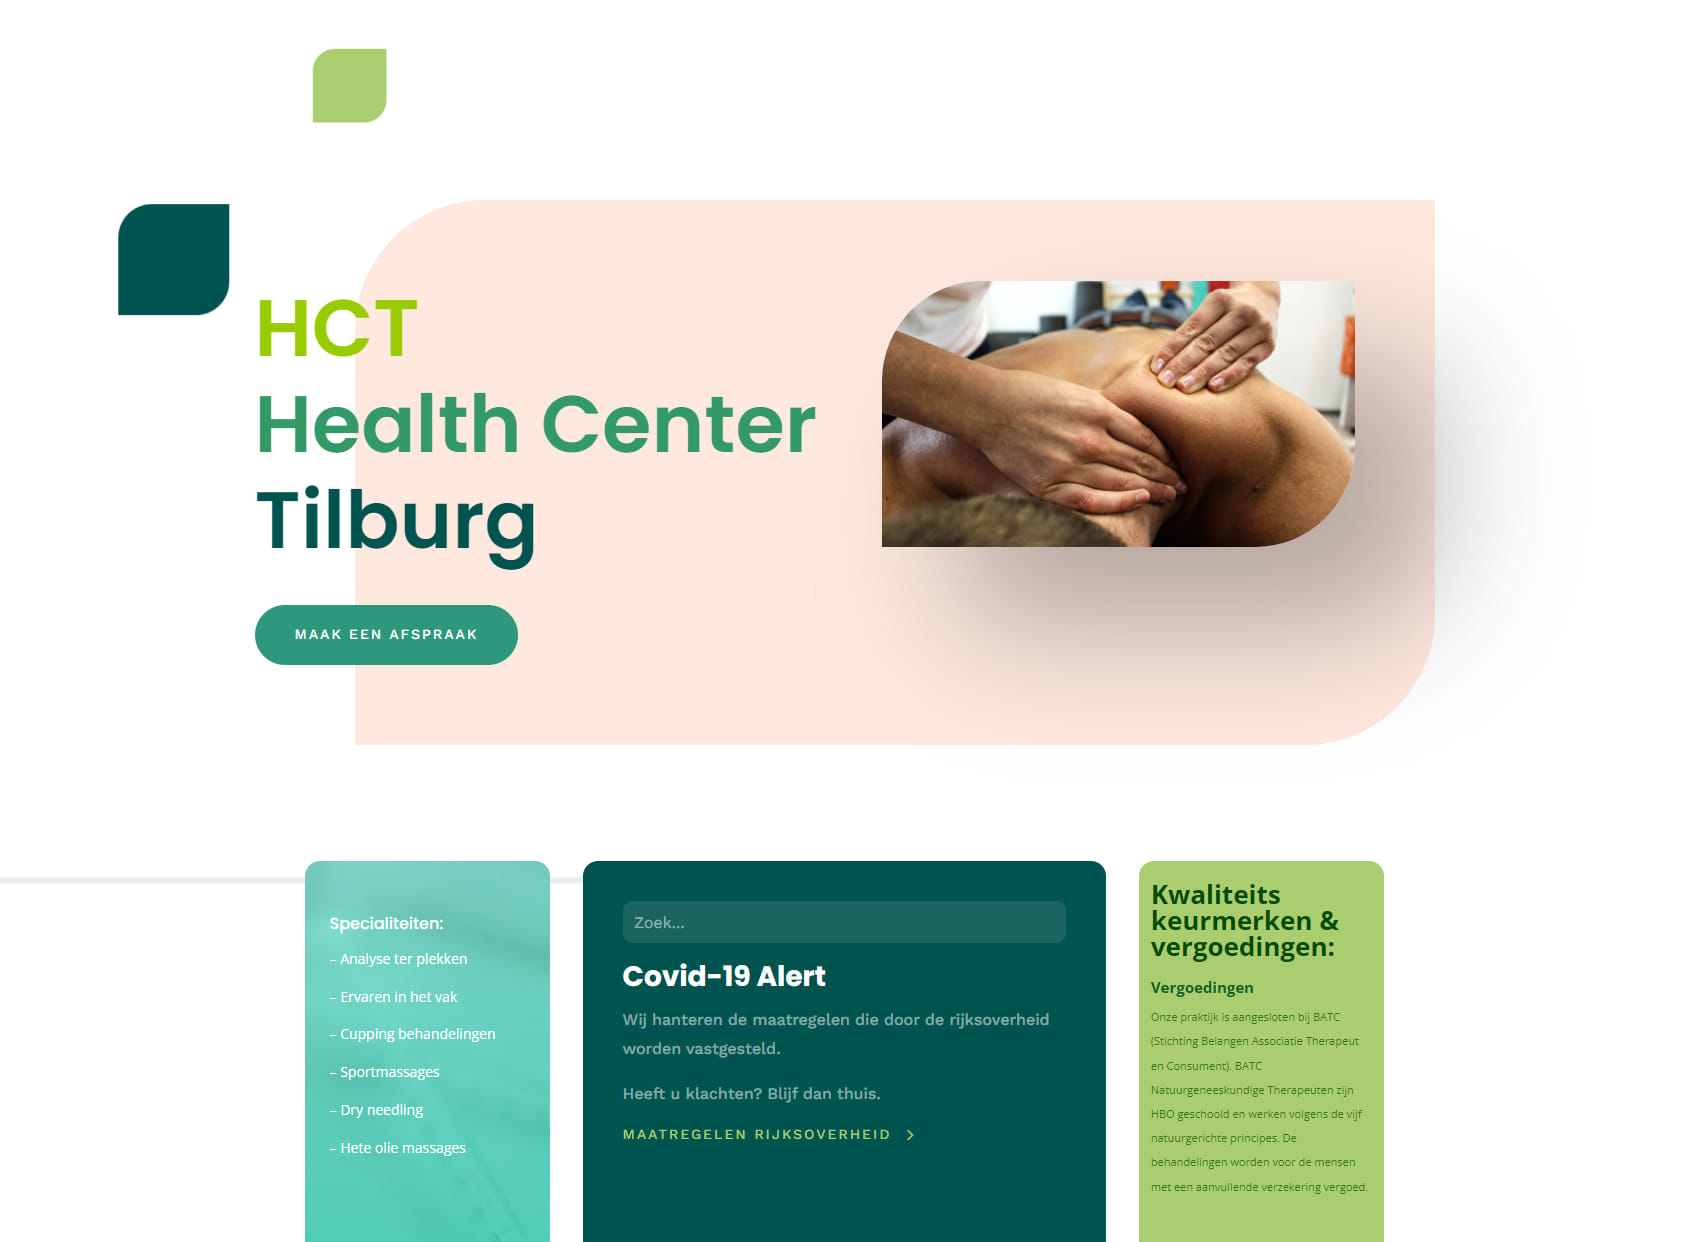 Health Center Tilburg